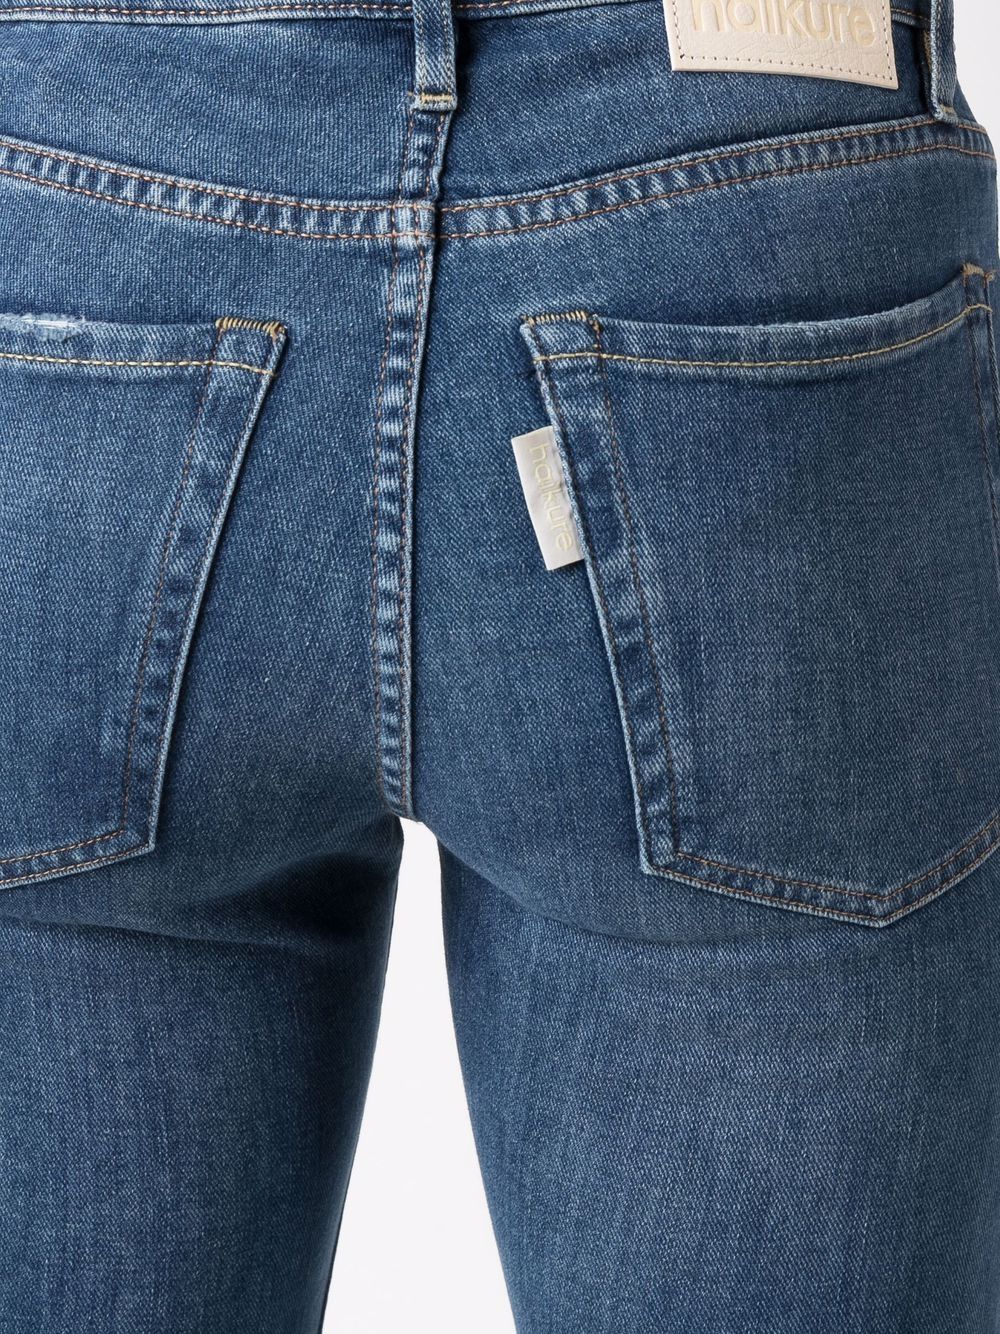 фото Haikure расклешенные джинсы кроя слим